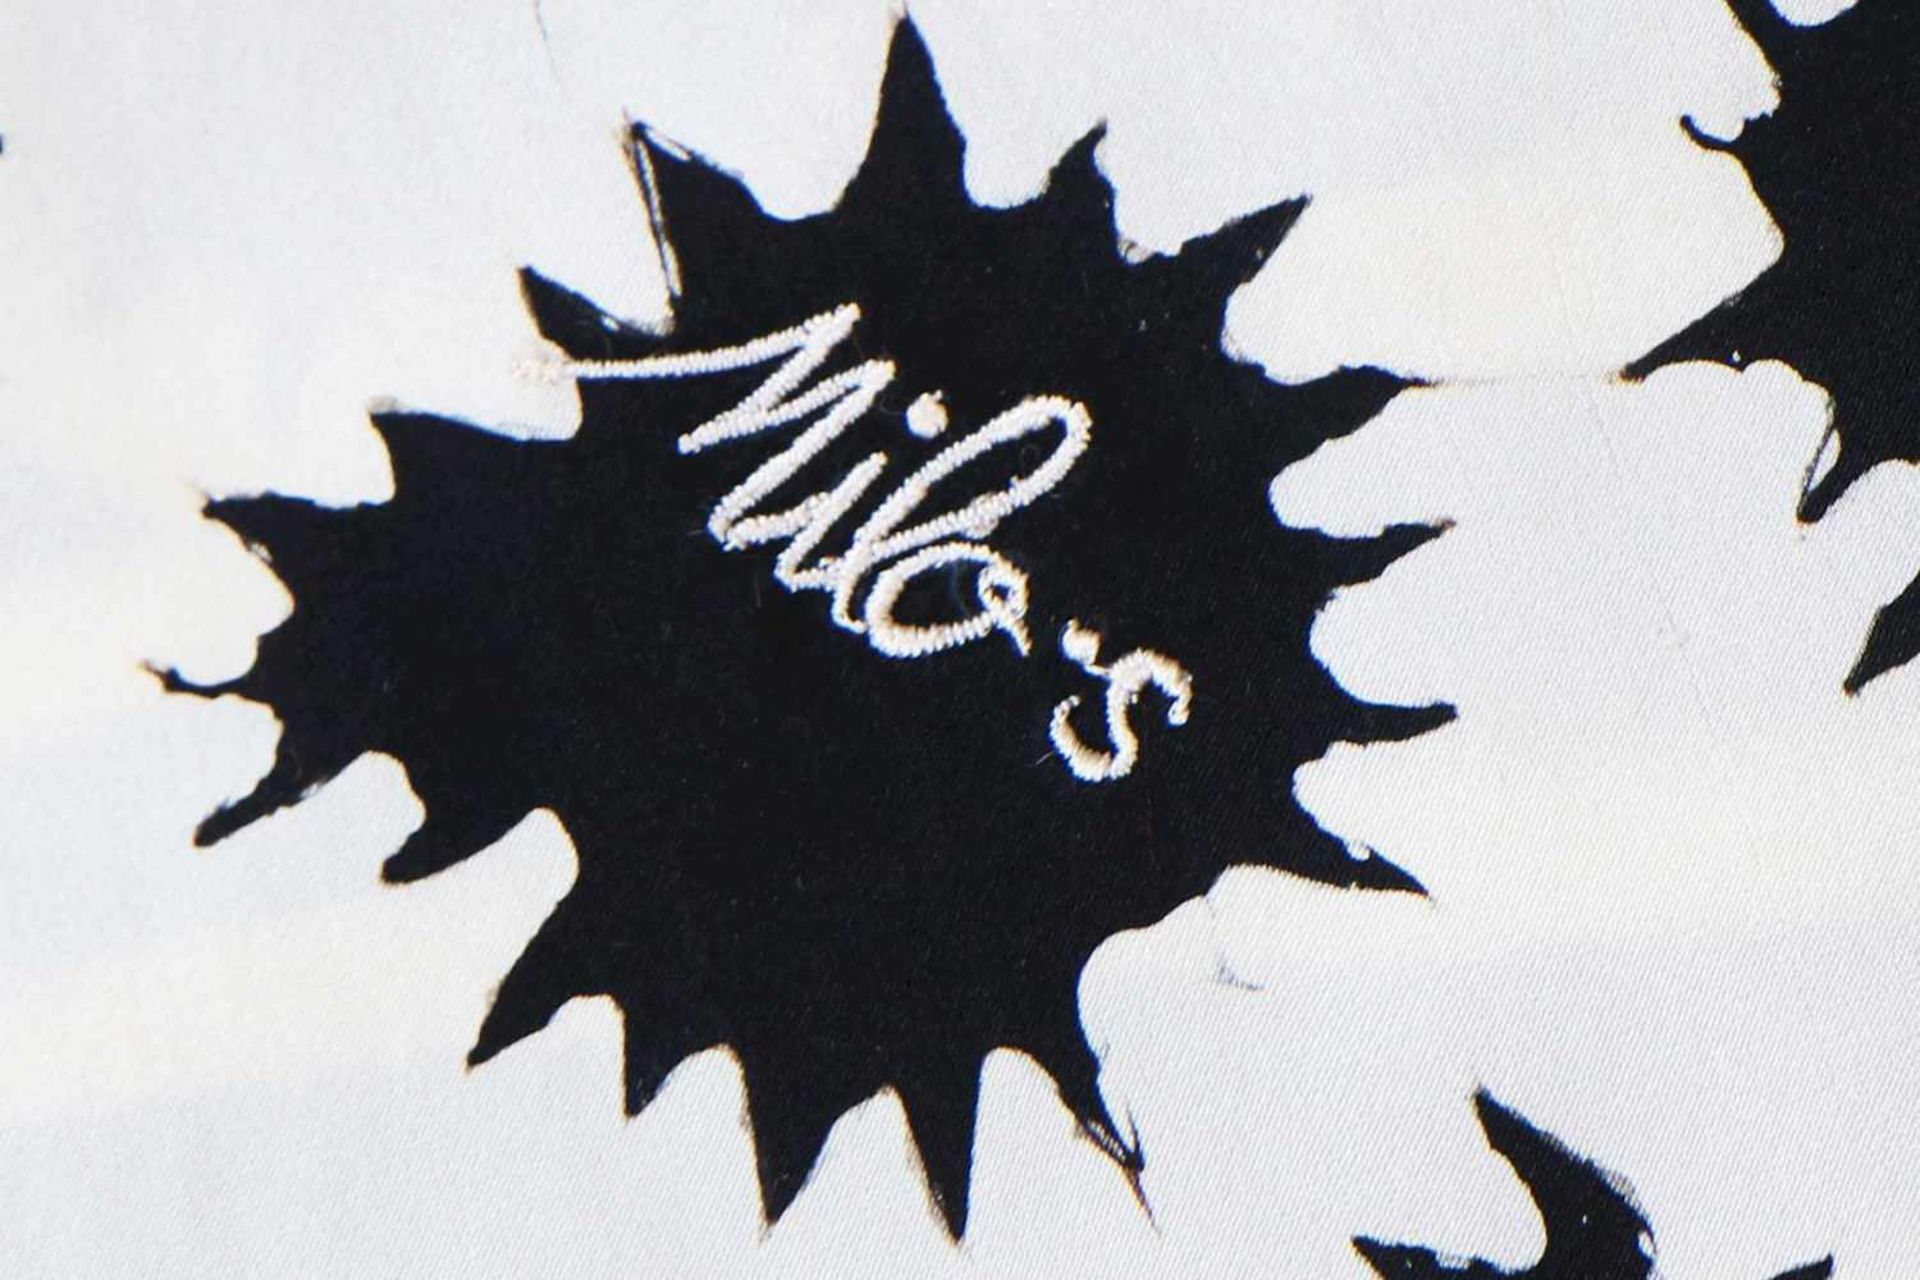 Großes Seidentuchschwarz-weißes Streifen- und Punktdekor, gemarkt Milo-s, 110x200cm, Tragespuren - Bild 2 aus 2